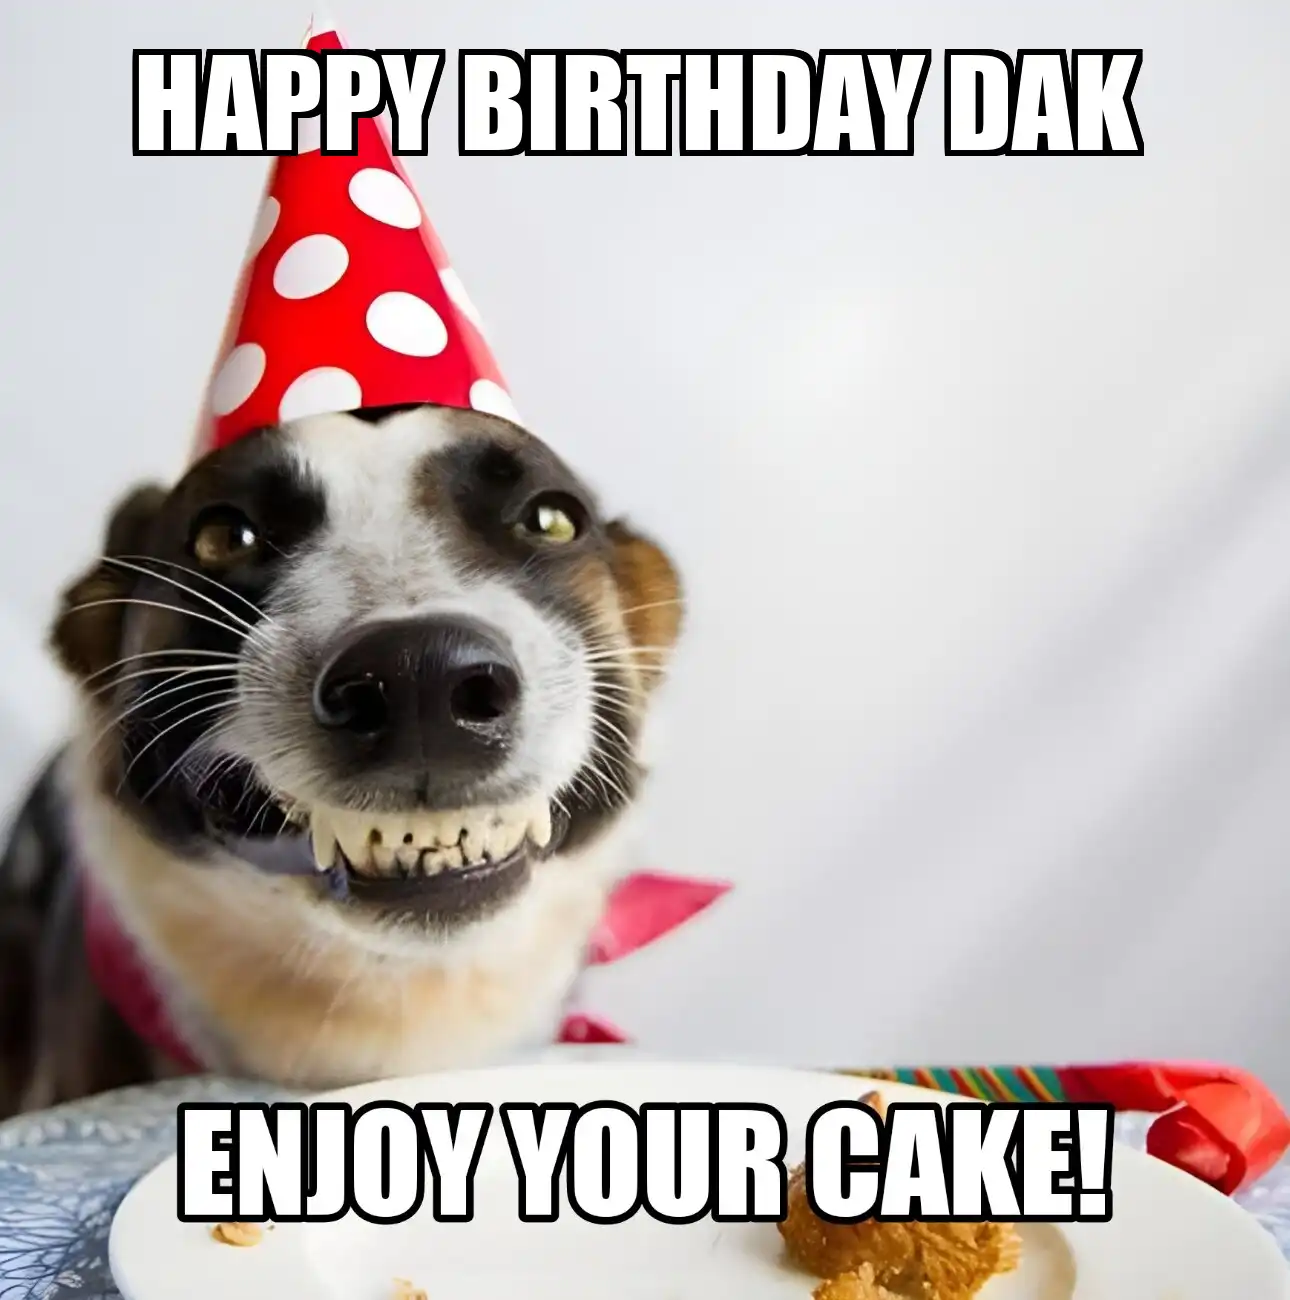 Happy Birthday Dak Enjoy Your Cake Dog Meme